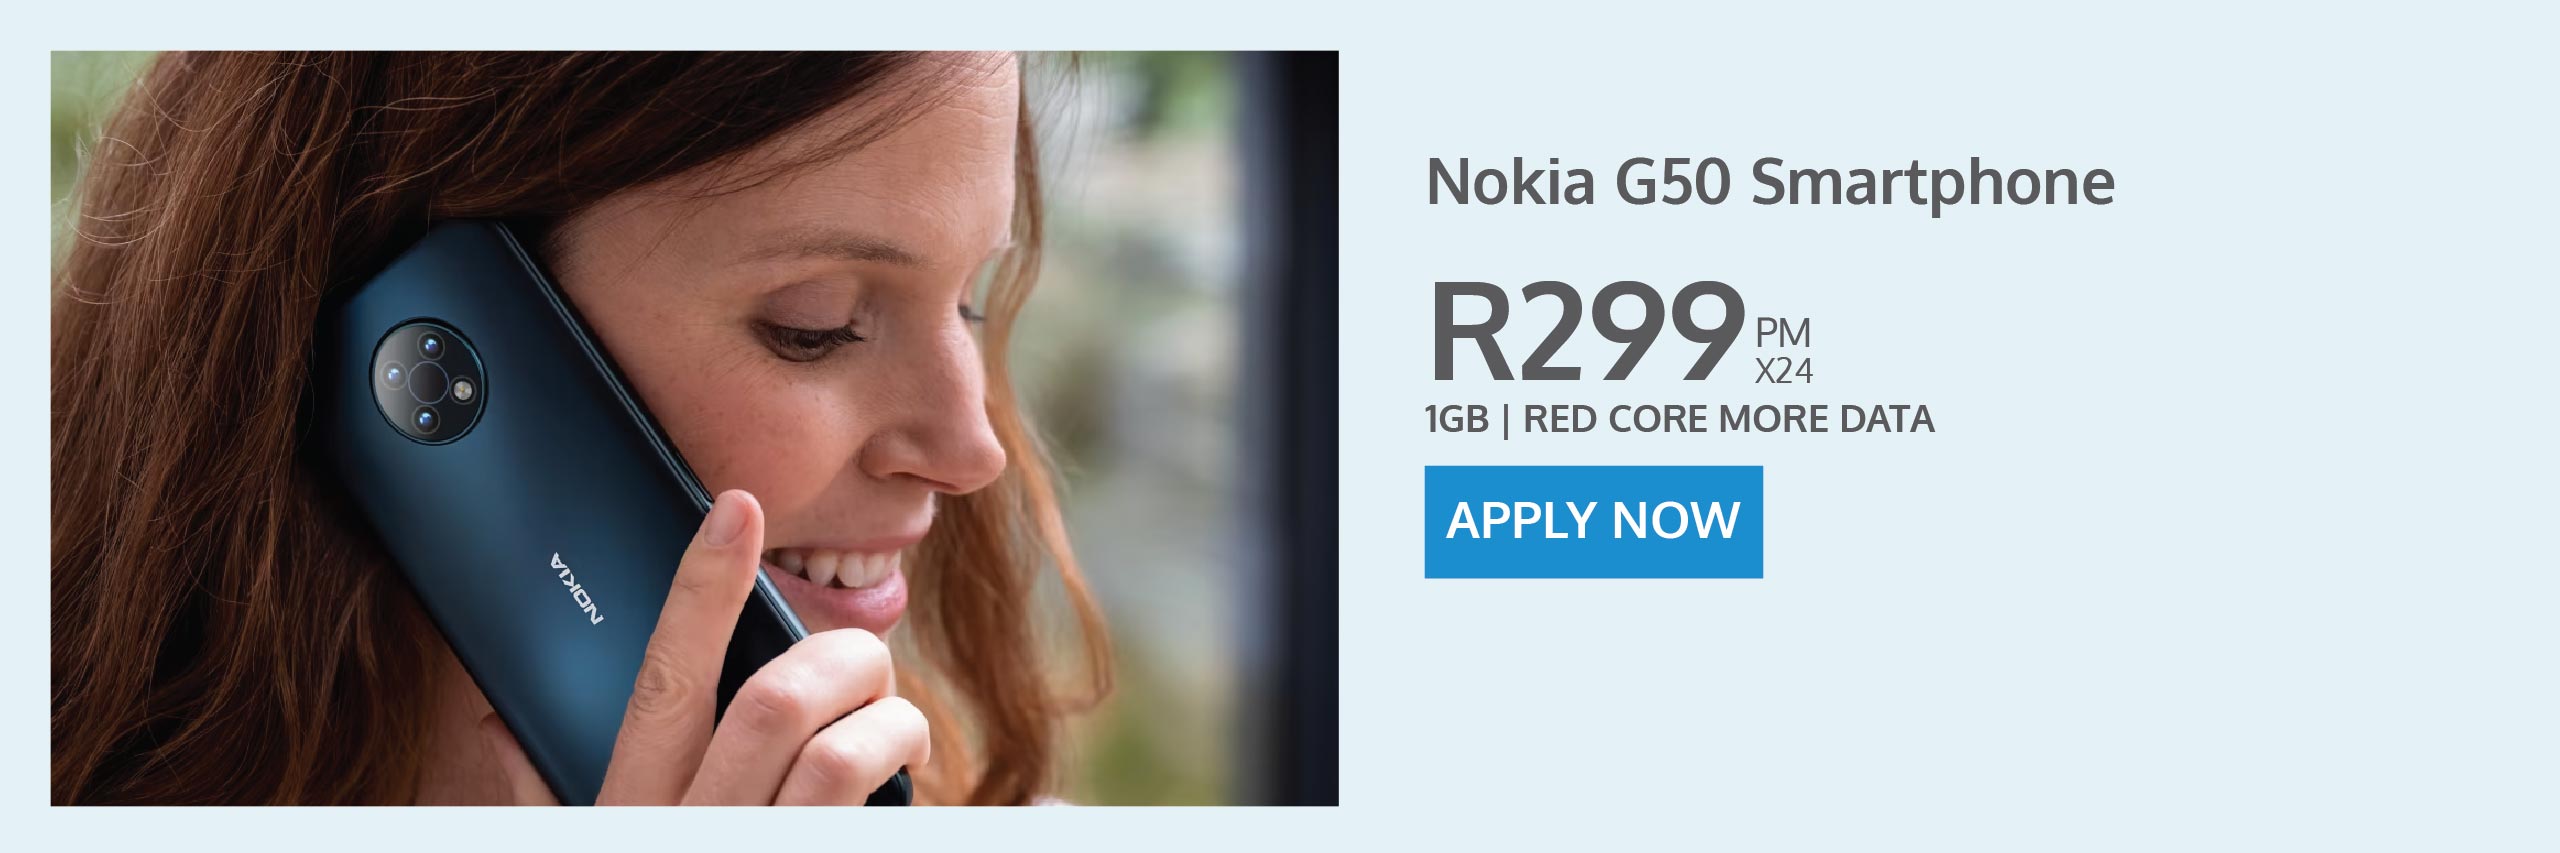 Nokia G50 - contract deal